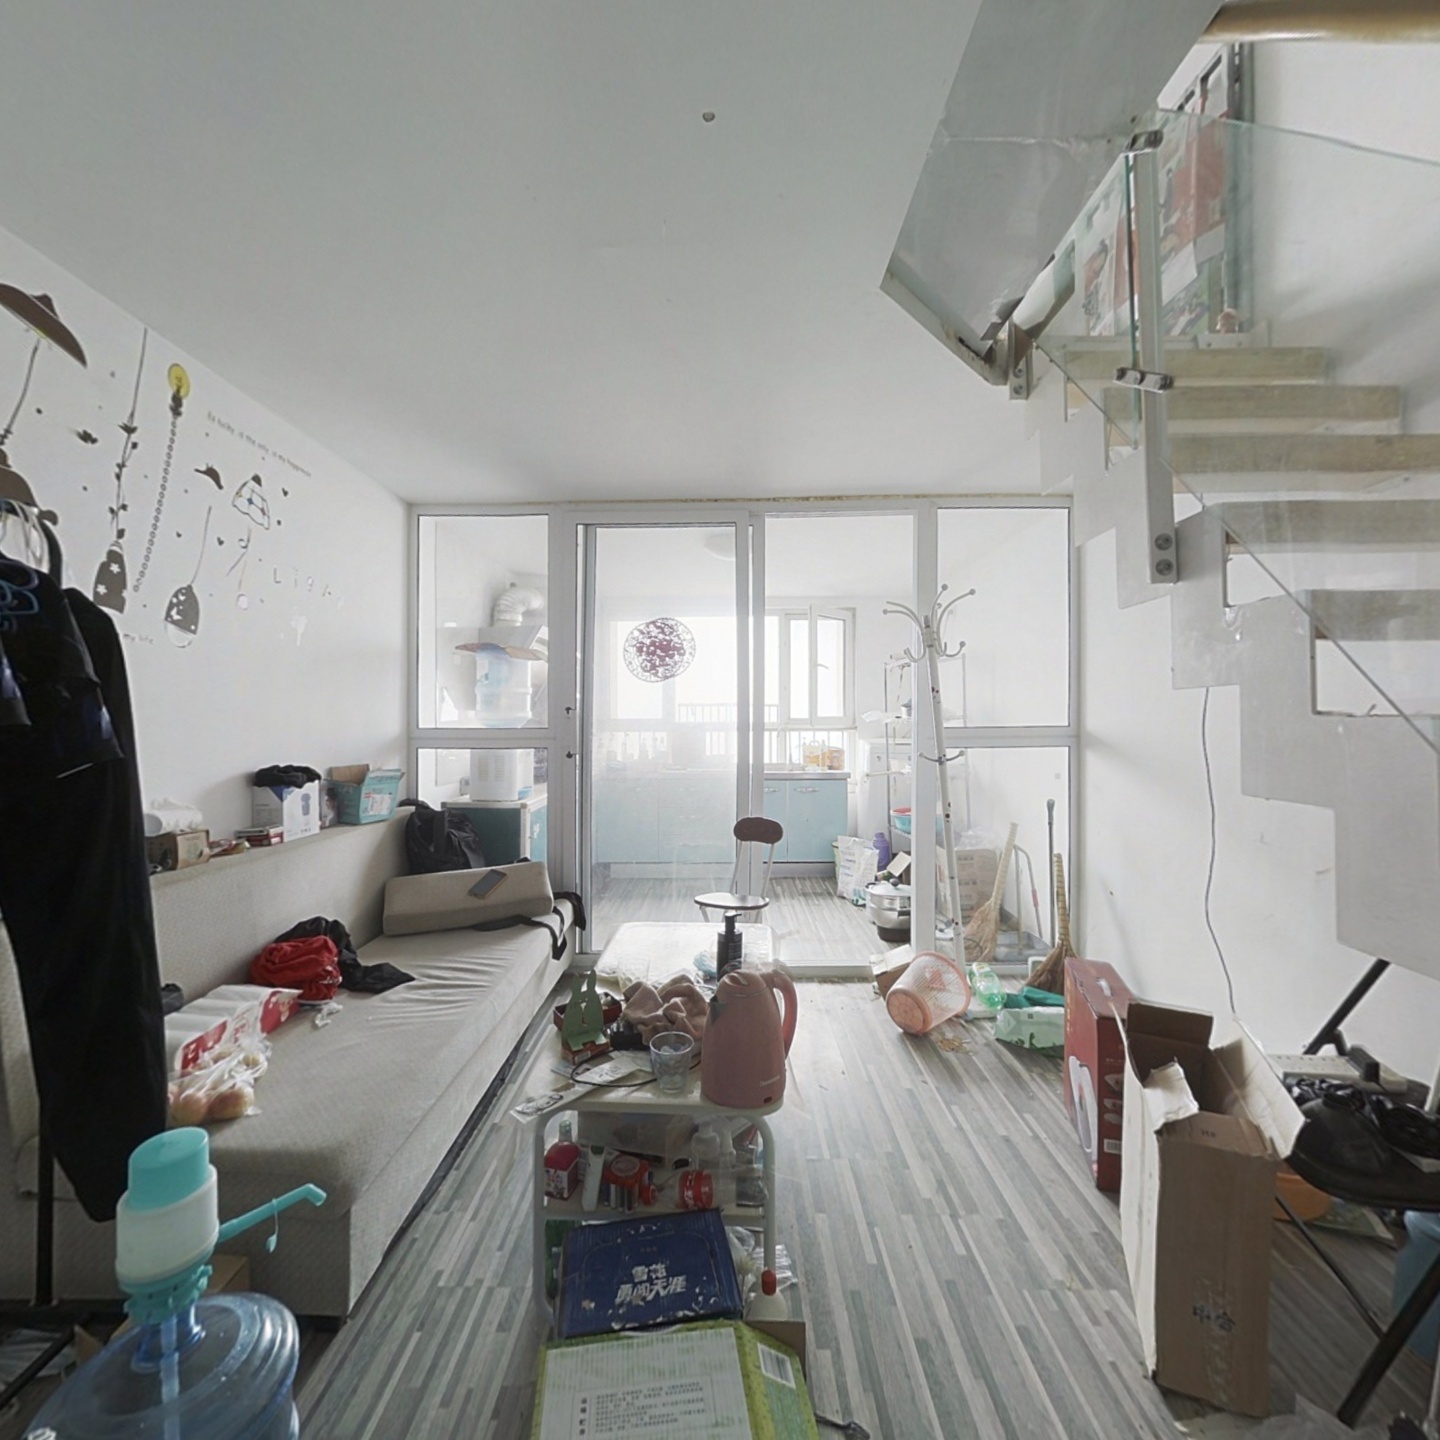 花园路 凤凰SOHO 双层loft精装一居室公寓 急售